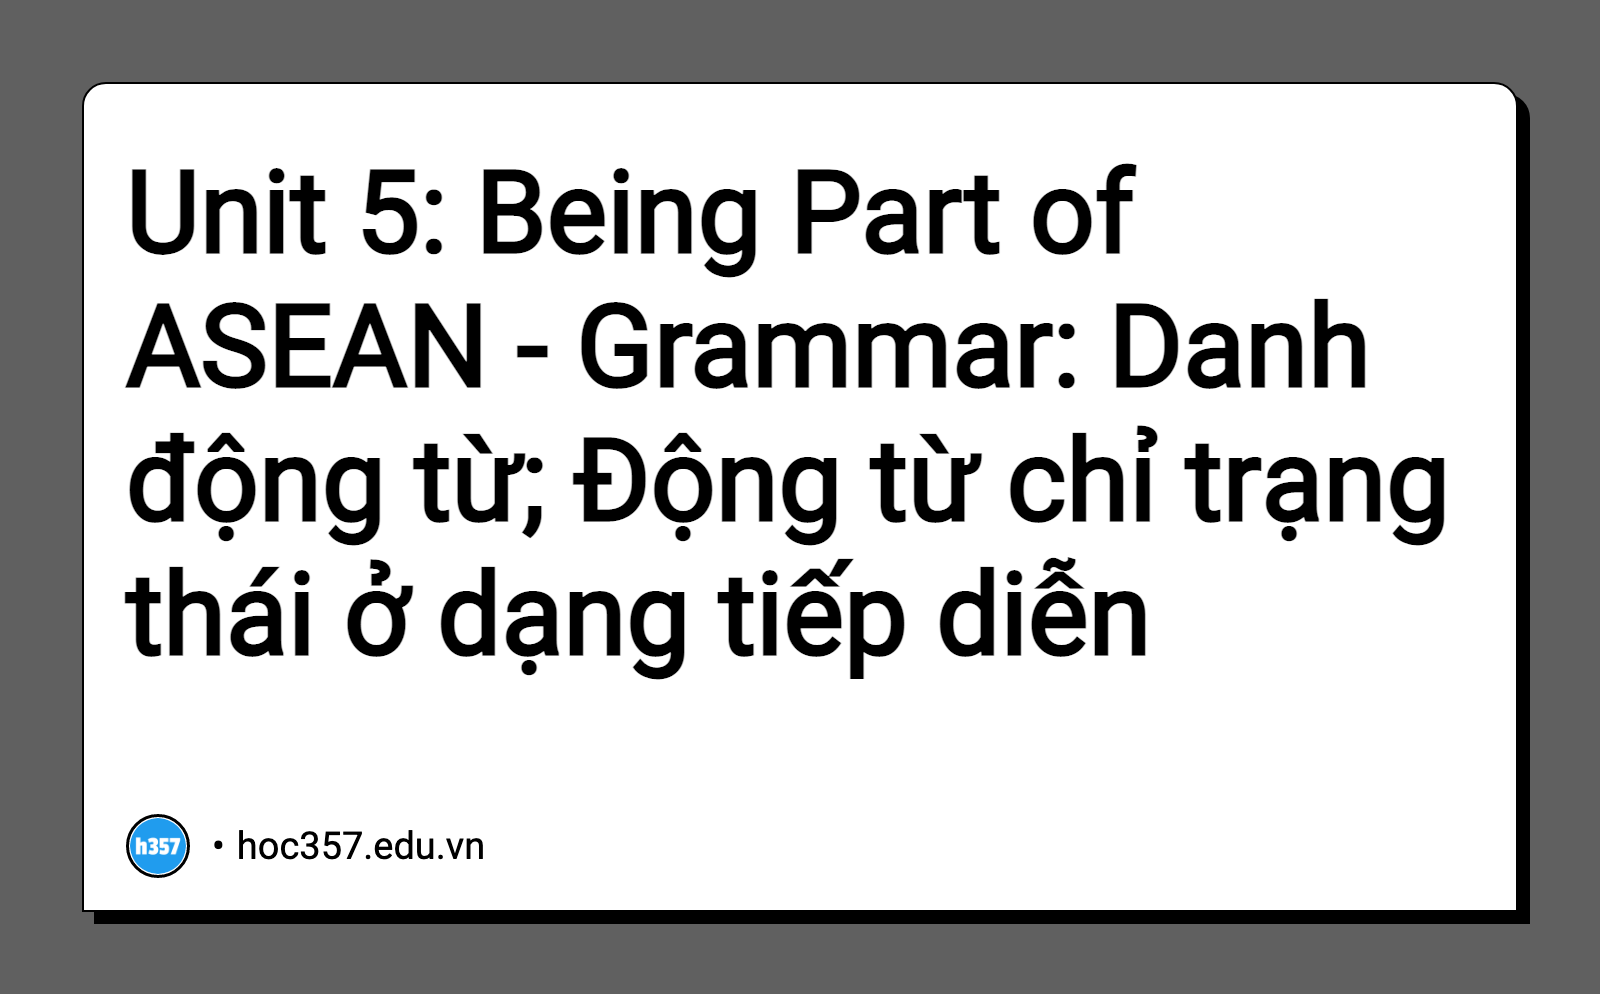 Hình minh họa Unit 5: Being Part of ASEAN - Grammar: Danh động từ; Động từ chỉ trạng thái ở dạng tiếp diễn